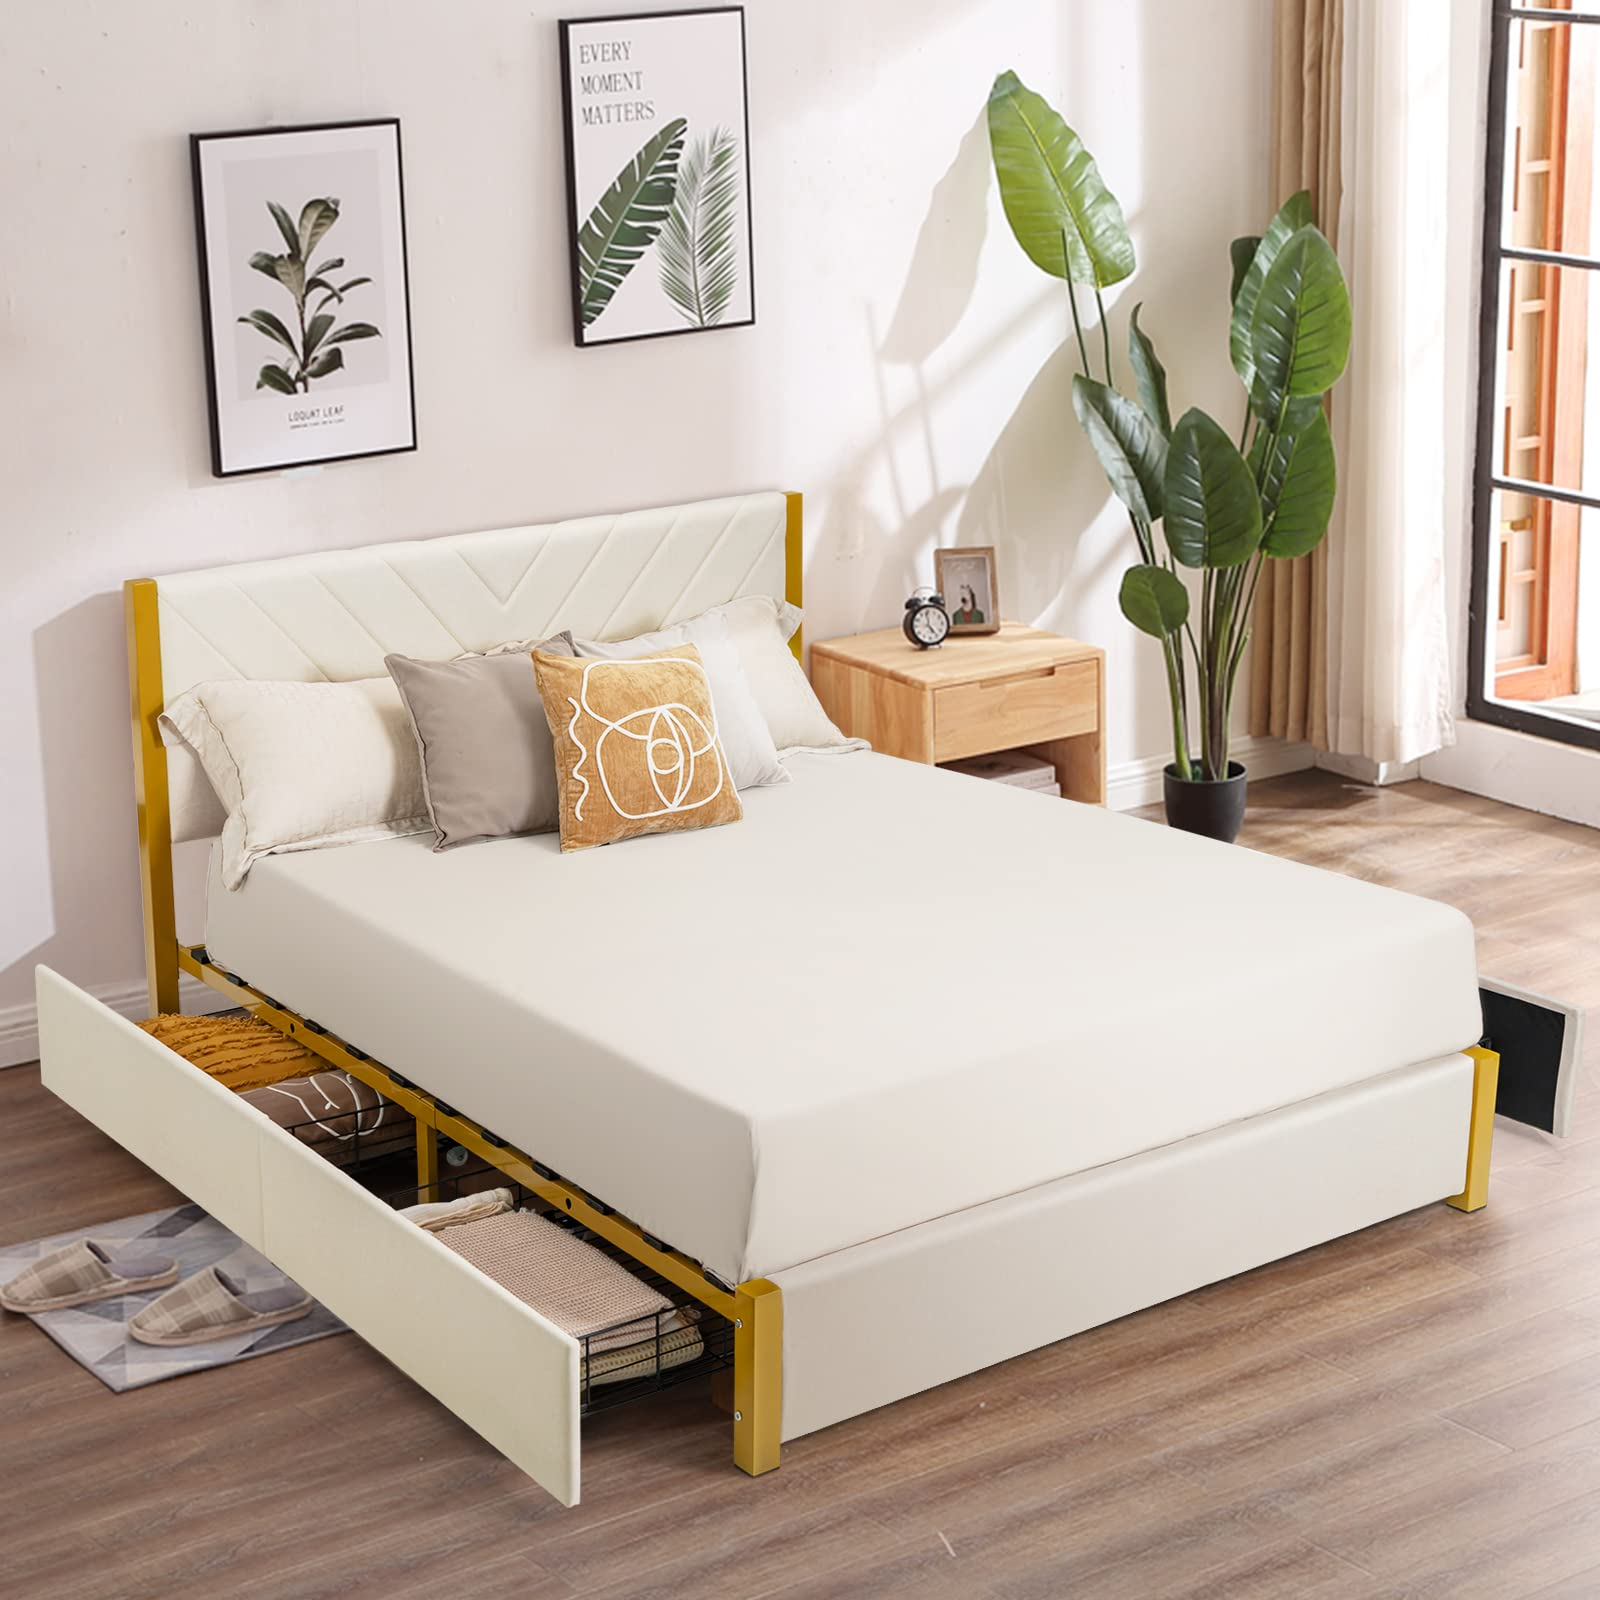 Giantex Upholstered Bed Frame